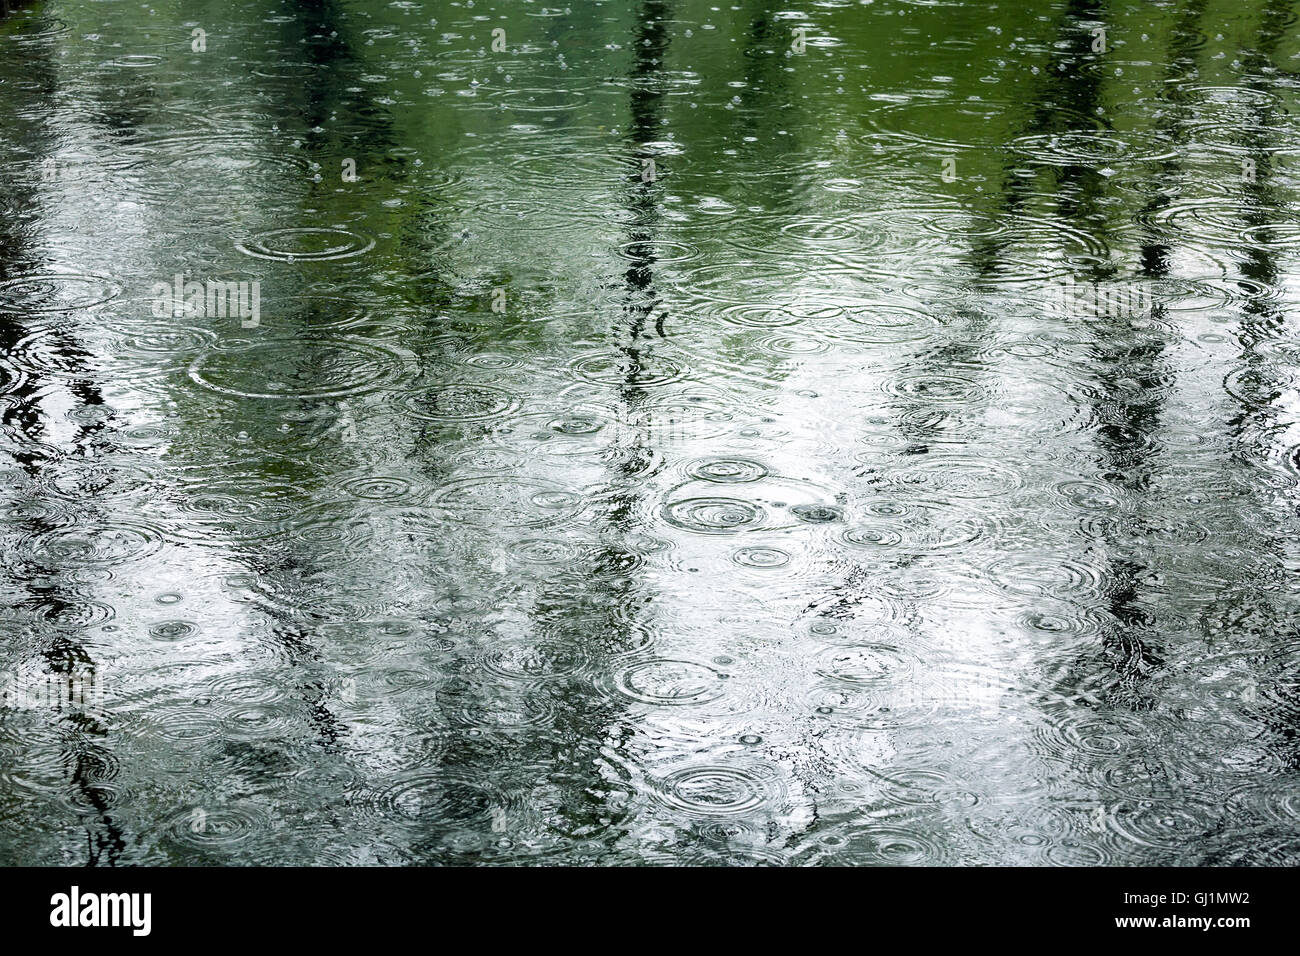 Regen fällt in eine Pfütze mit Bäumen Reflexion Stockfoto